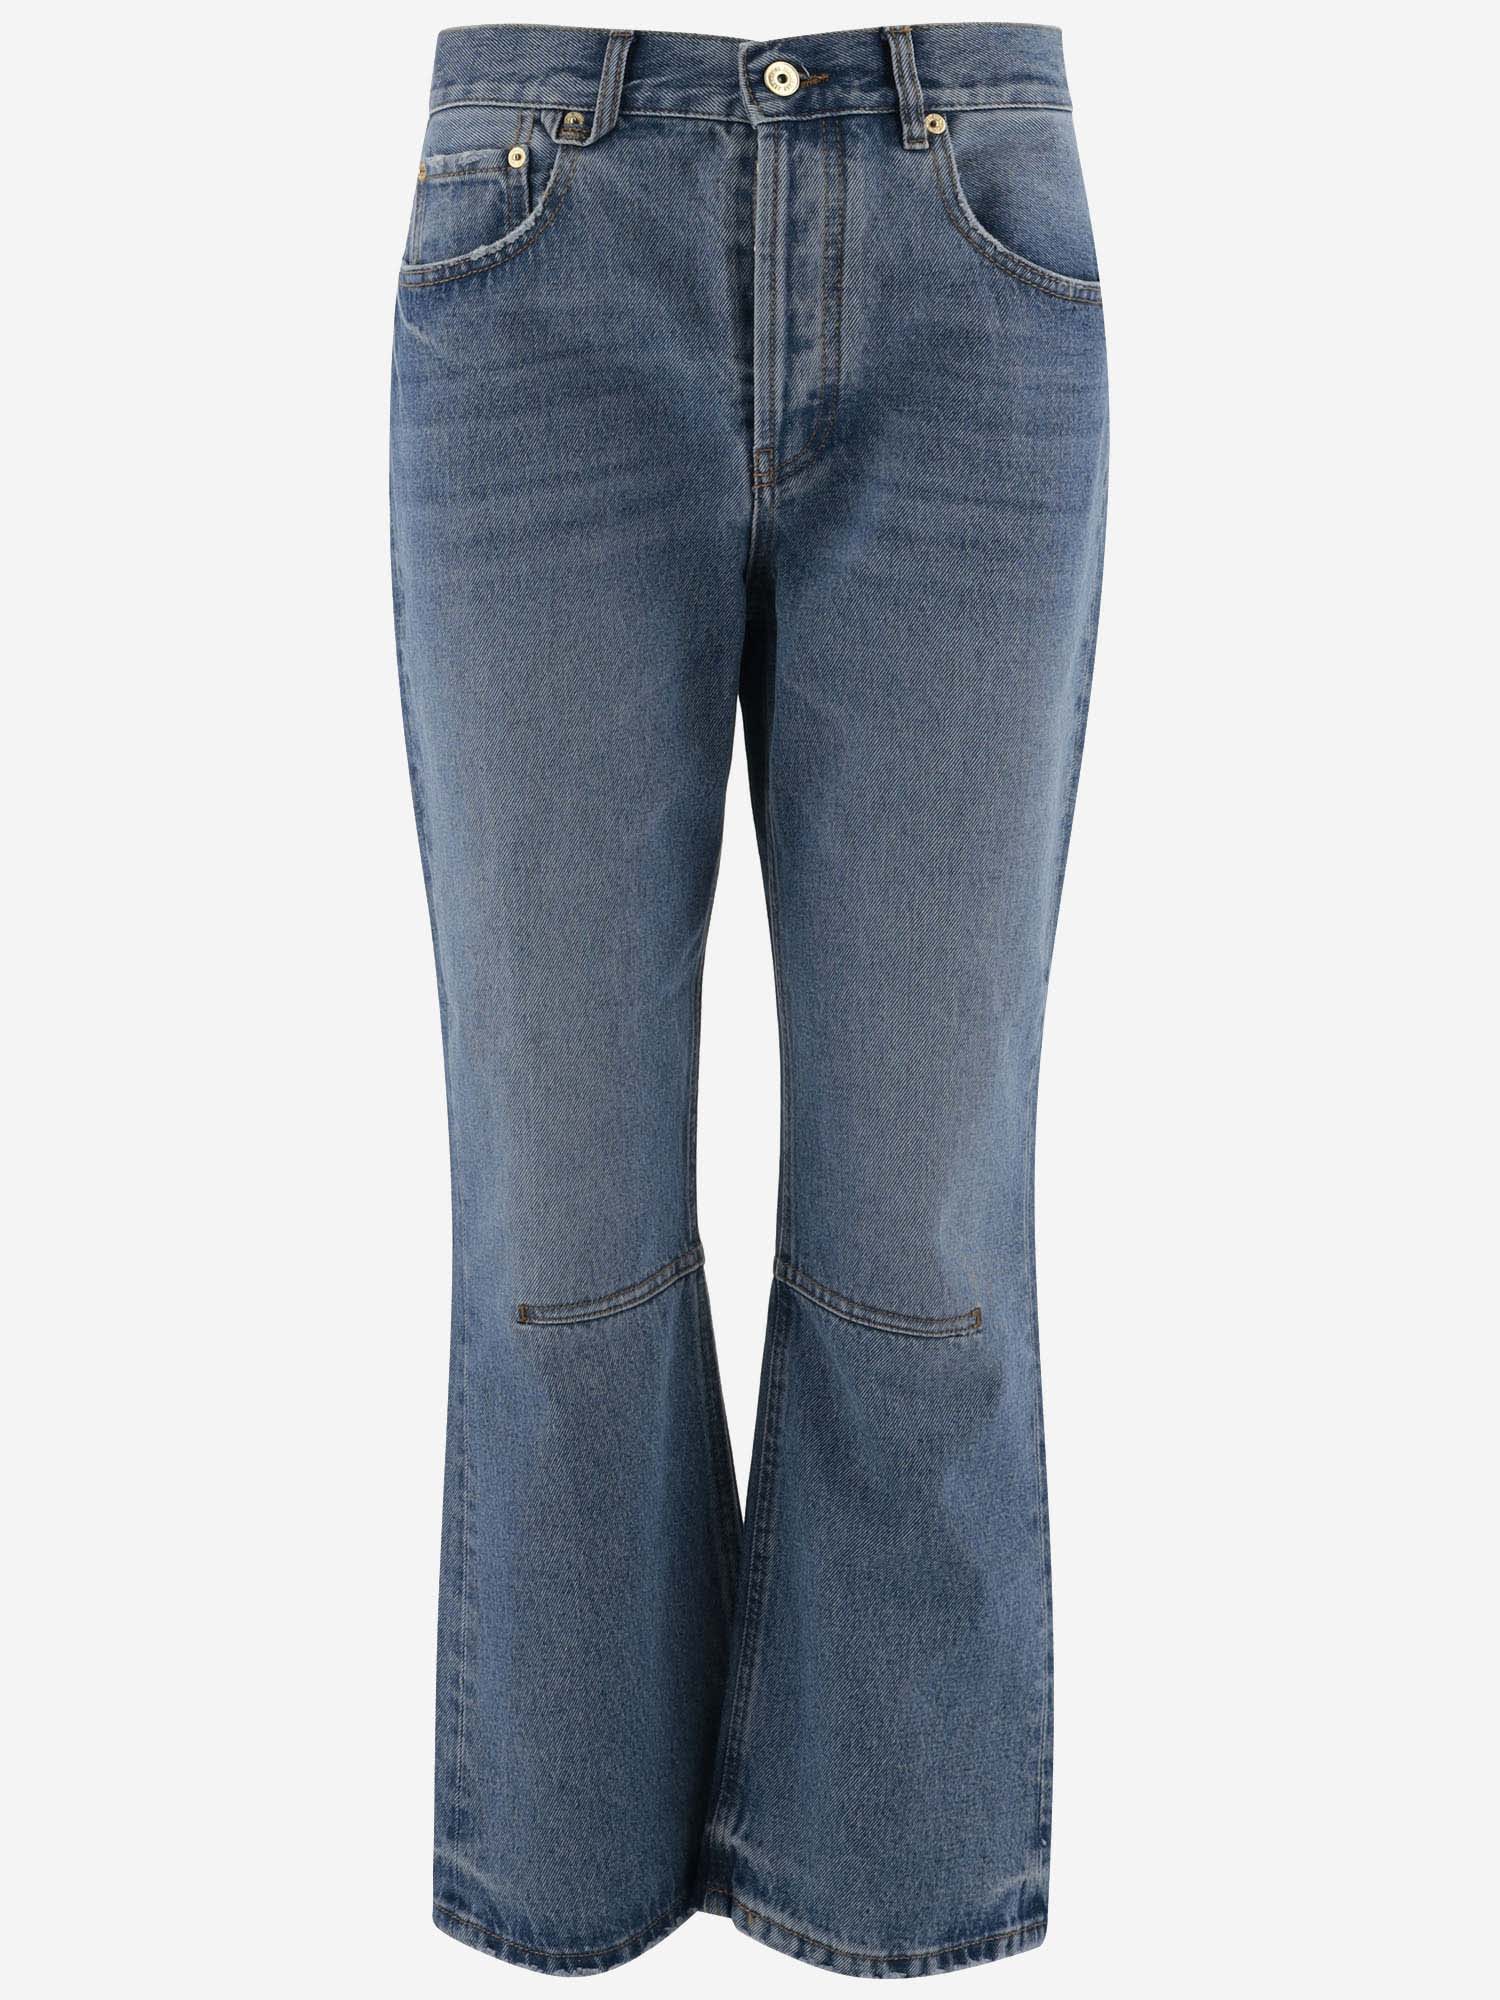 Shop Jacquemus Cotton Denim Jeans